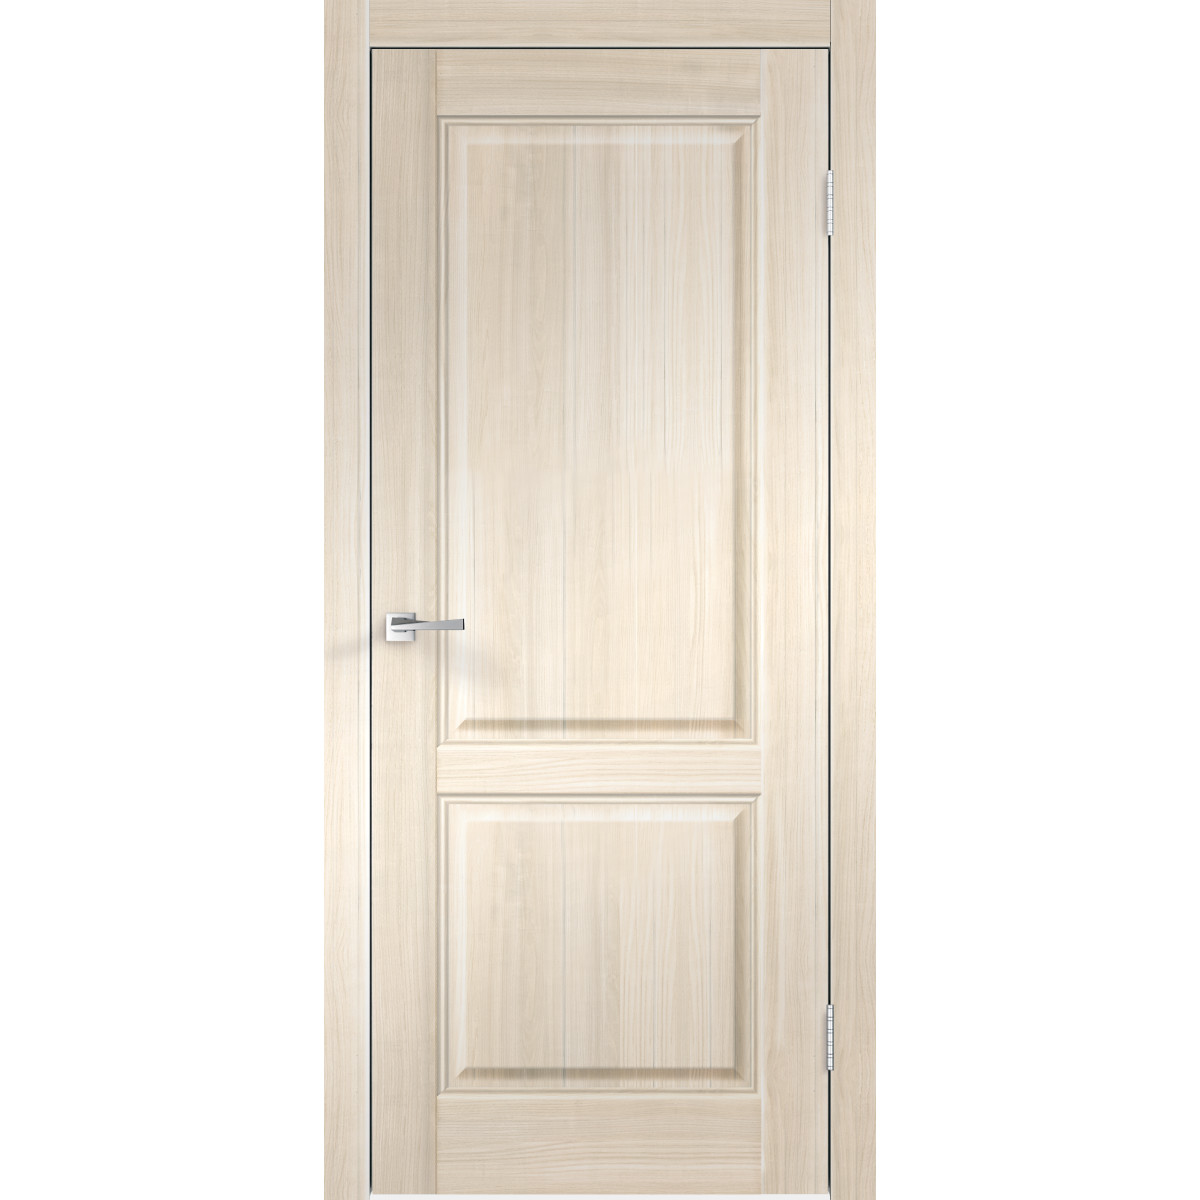 Дверь межкомнатная Вилла 2Р 70х200 см с фурнитурой, ПВХ, цвет японский ясень